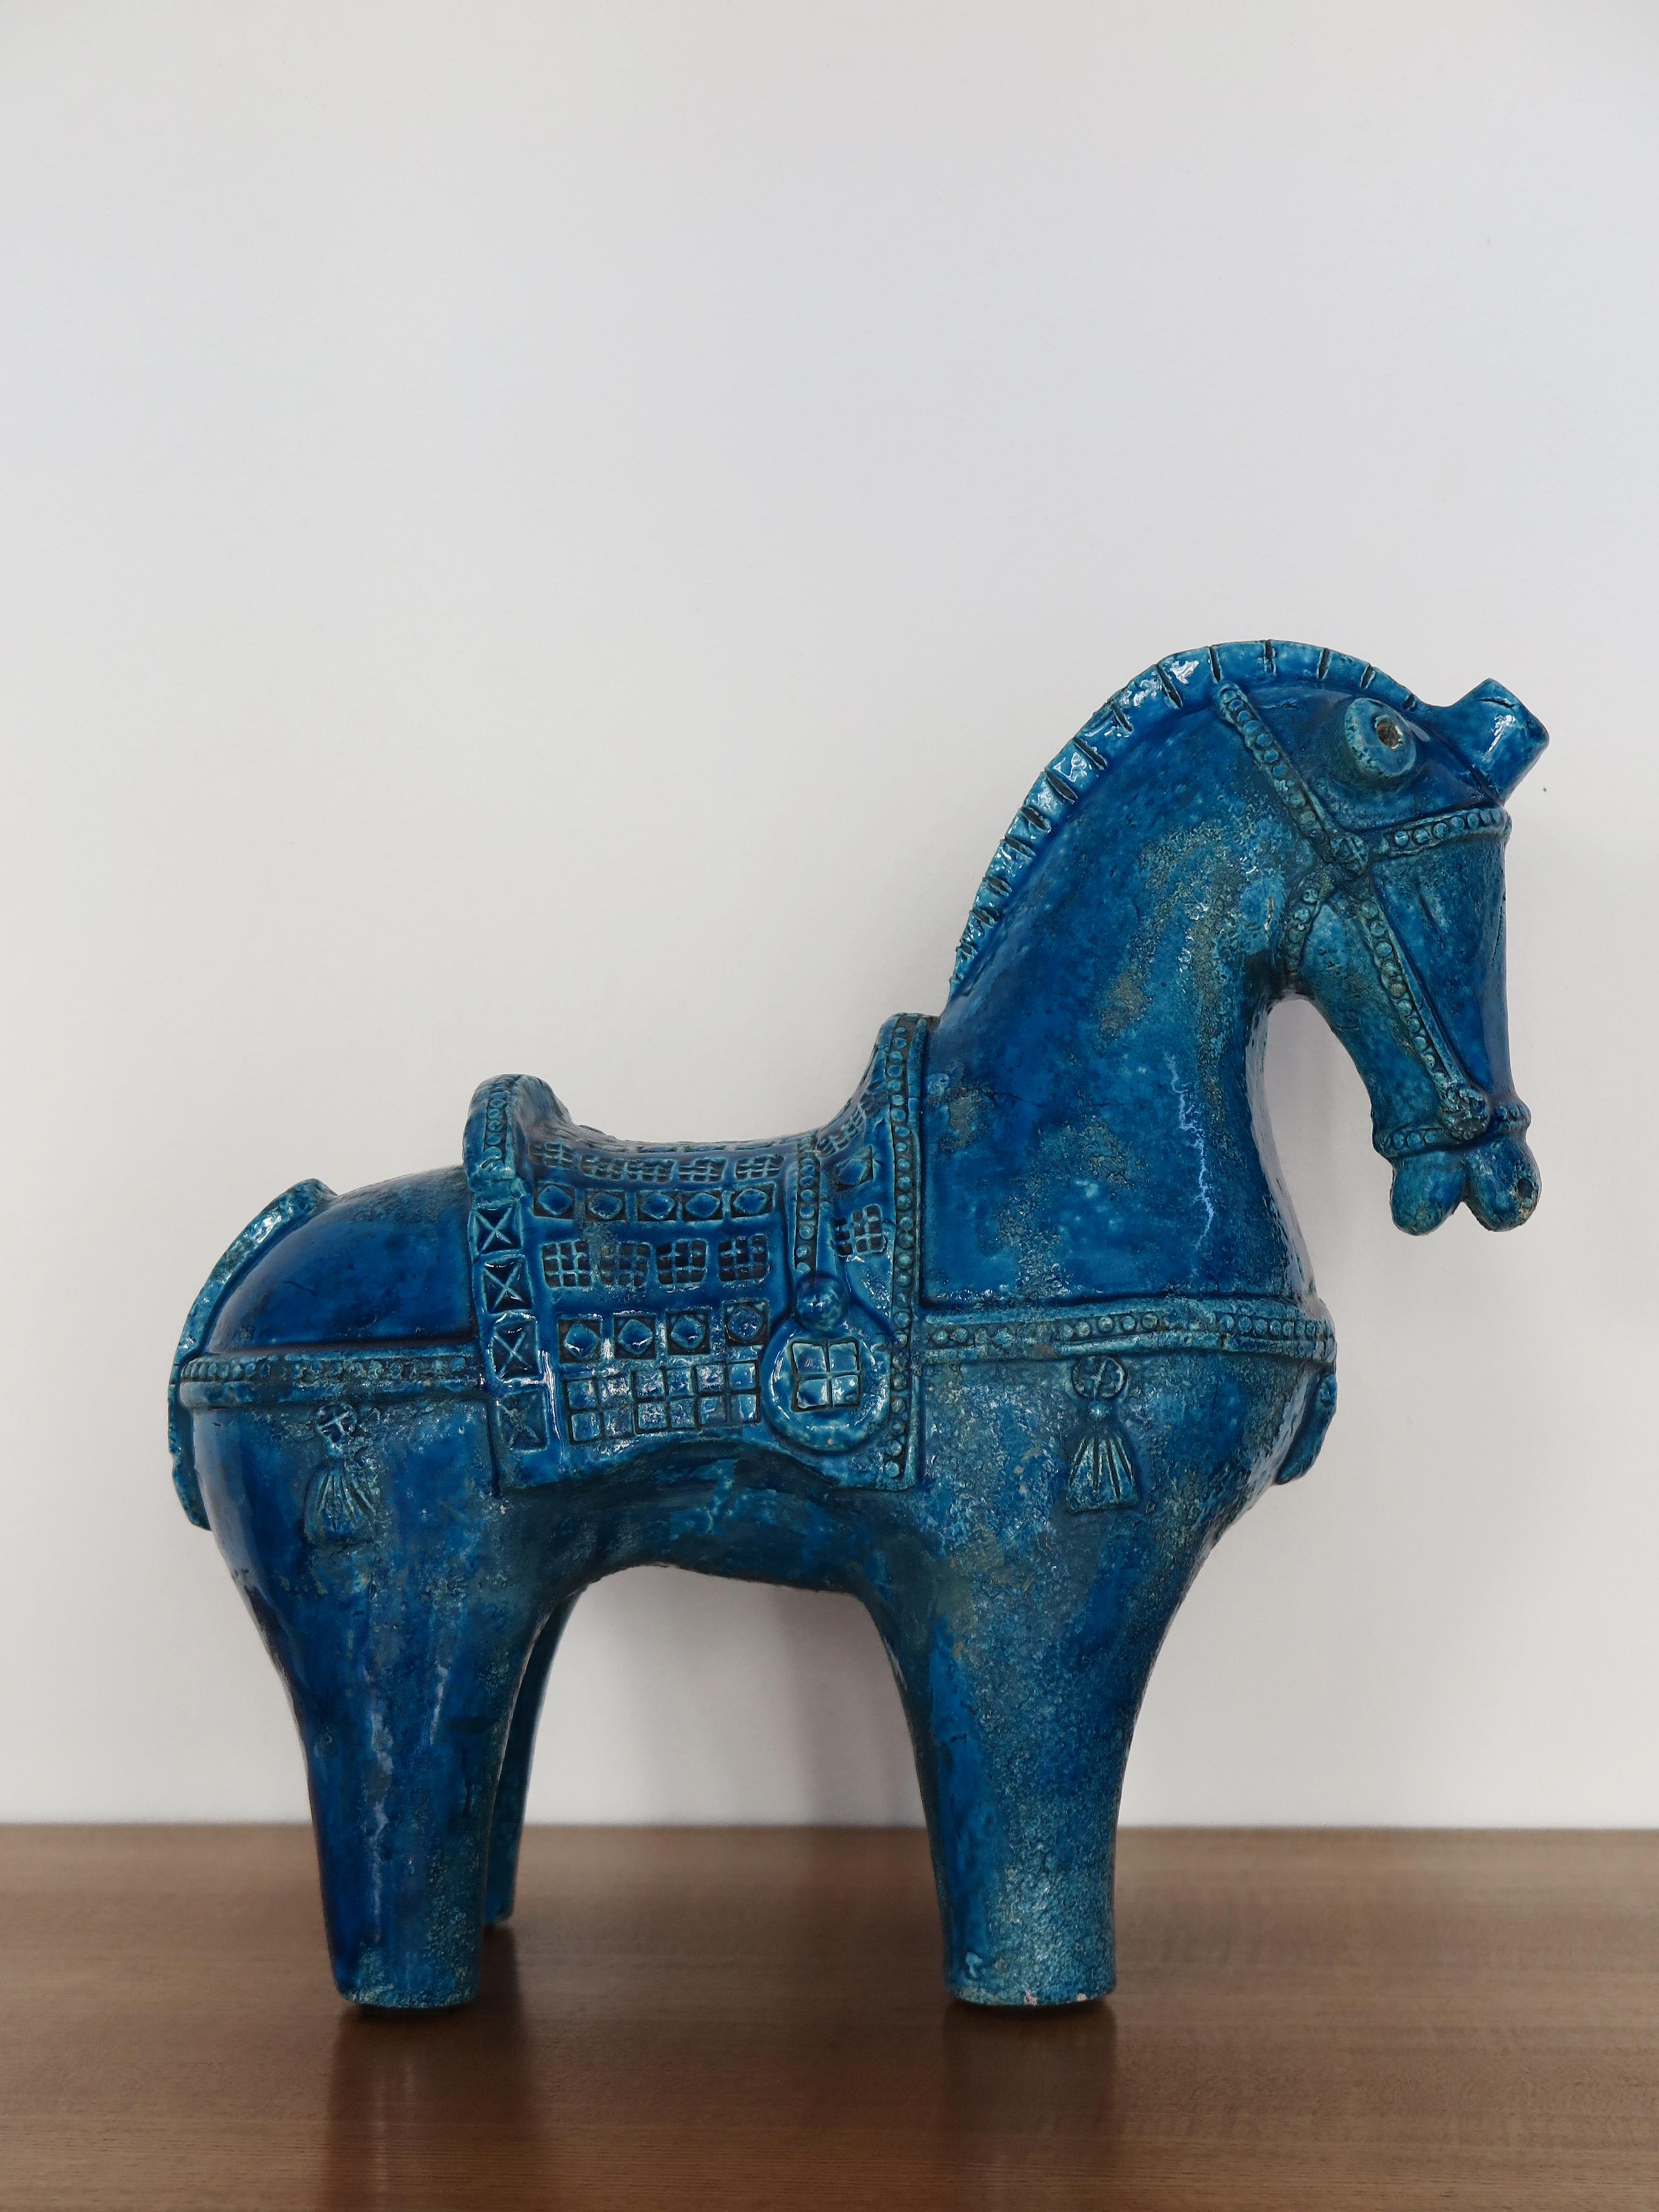 Italienische Skulptur eines stilisierten Pferdes aus blau glasierter Keramik, entworfen von Aldo Londi und hergestellt von Bitossi Fiorentino, Italien 1960er Jahre

Bitte beachten Sie, dass die Keramik original aus der Zeit stammt und daher normale